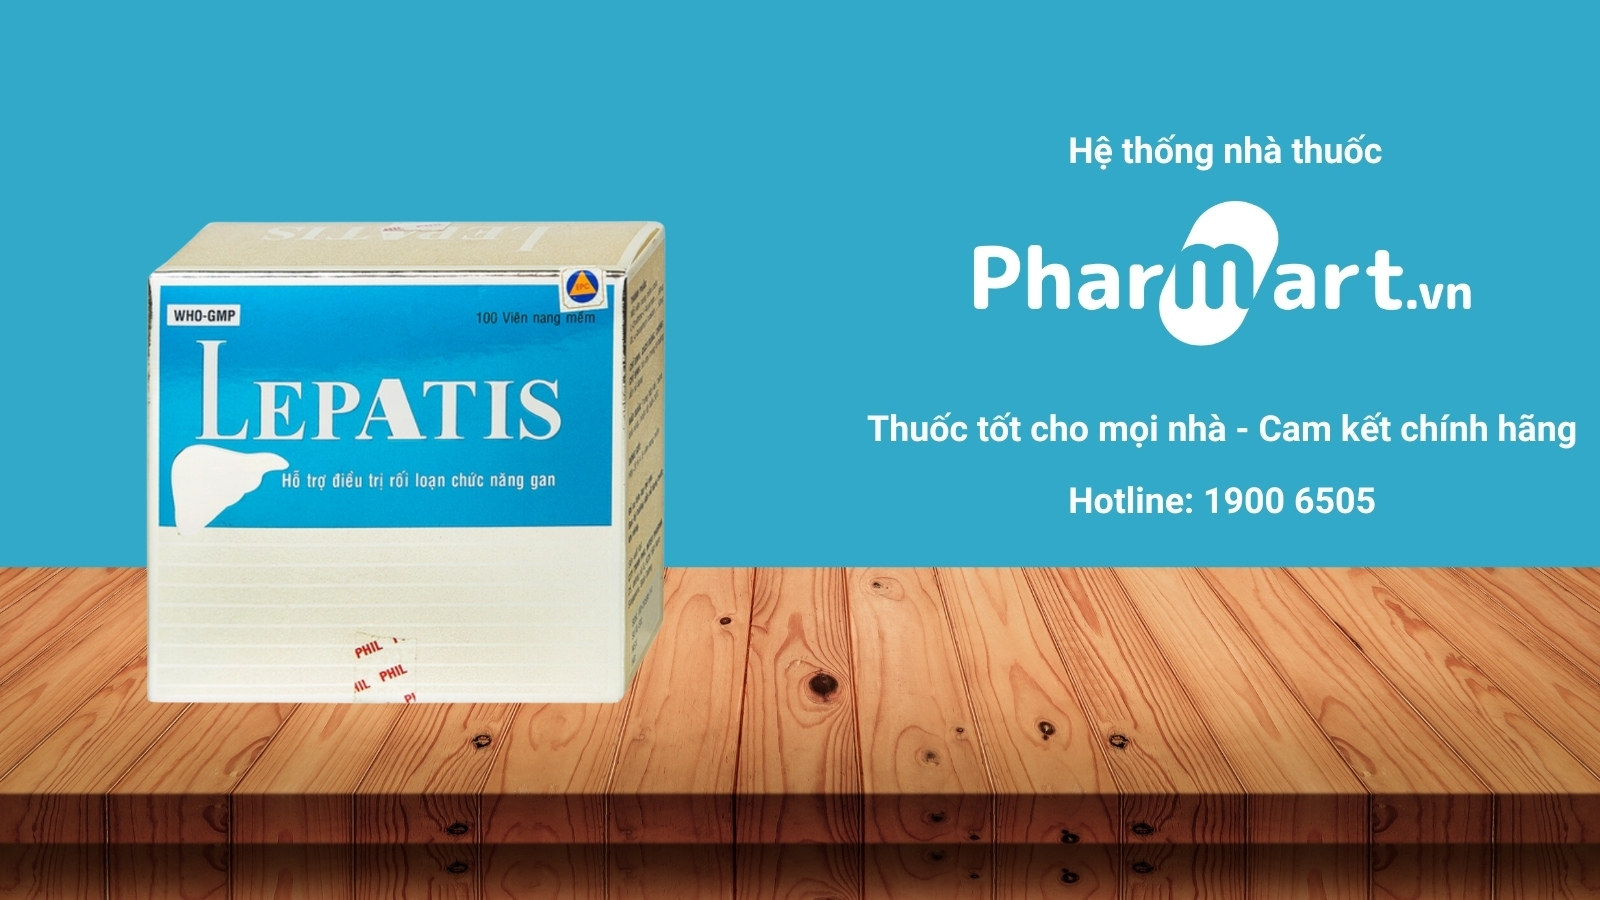 Mua ngay Lepatis chính hãng tại Pharmart.vn